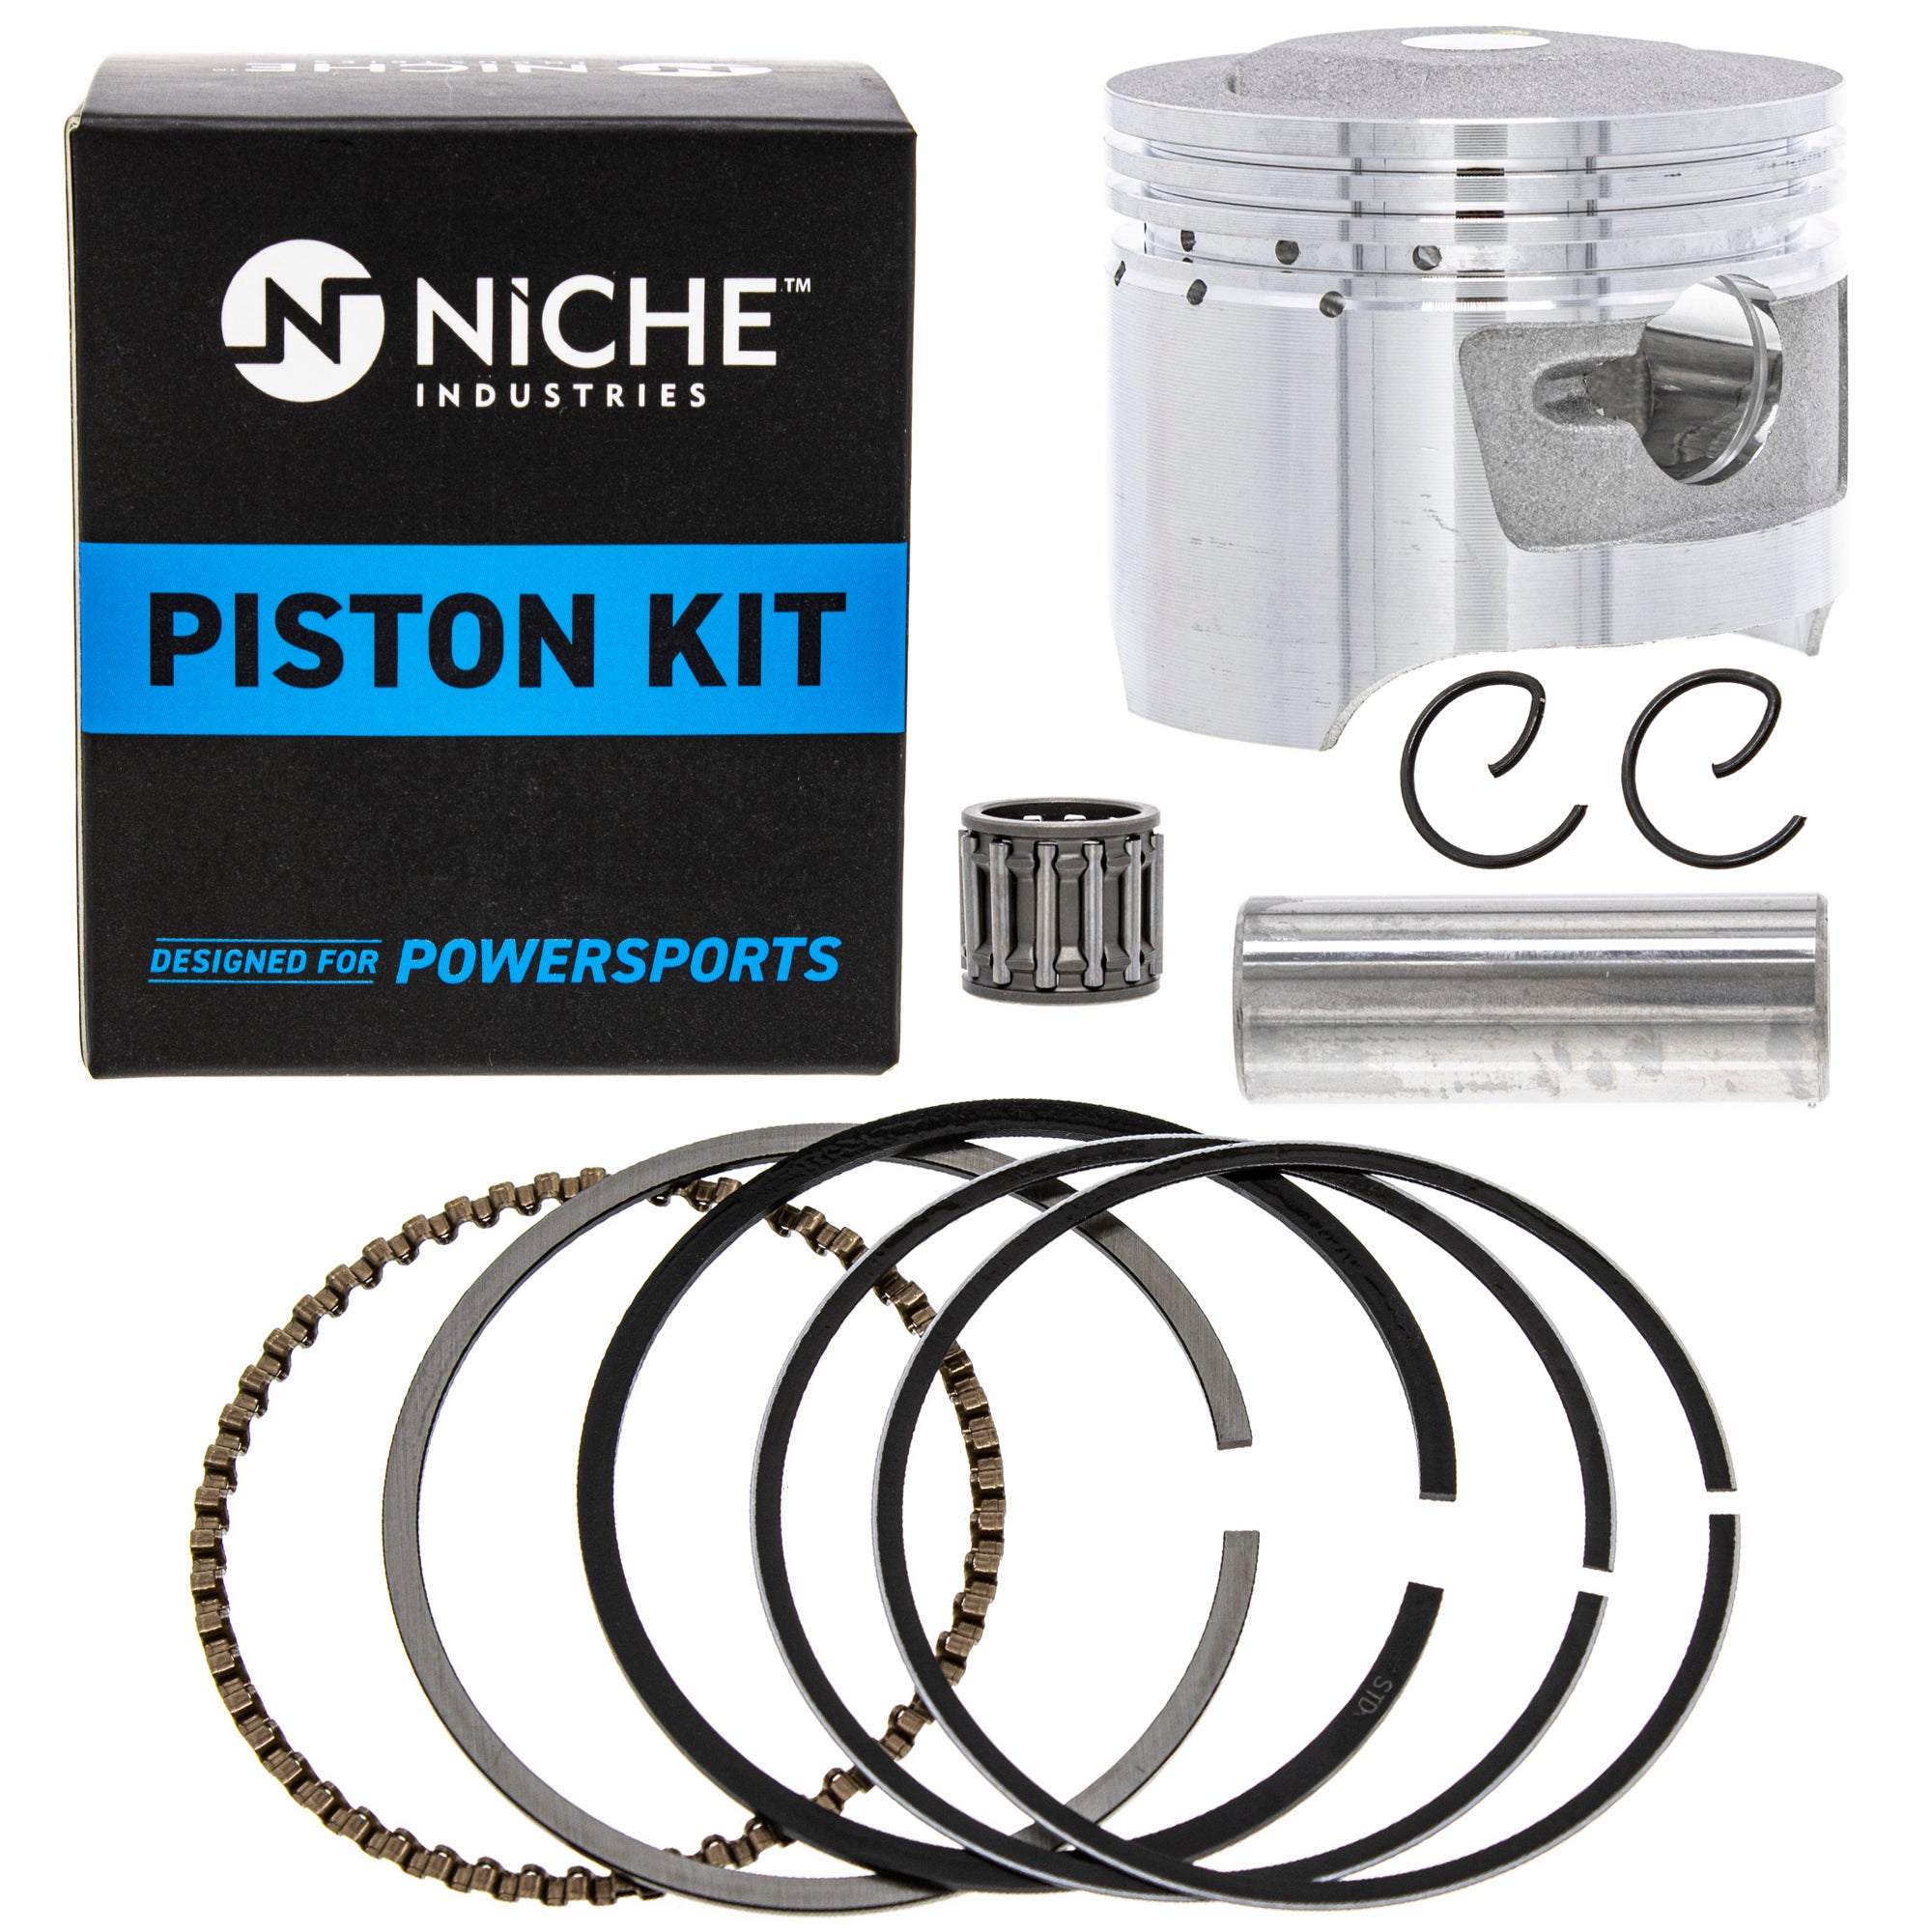 NICHE MK1001139 Piston Kit